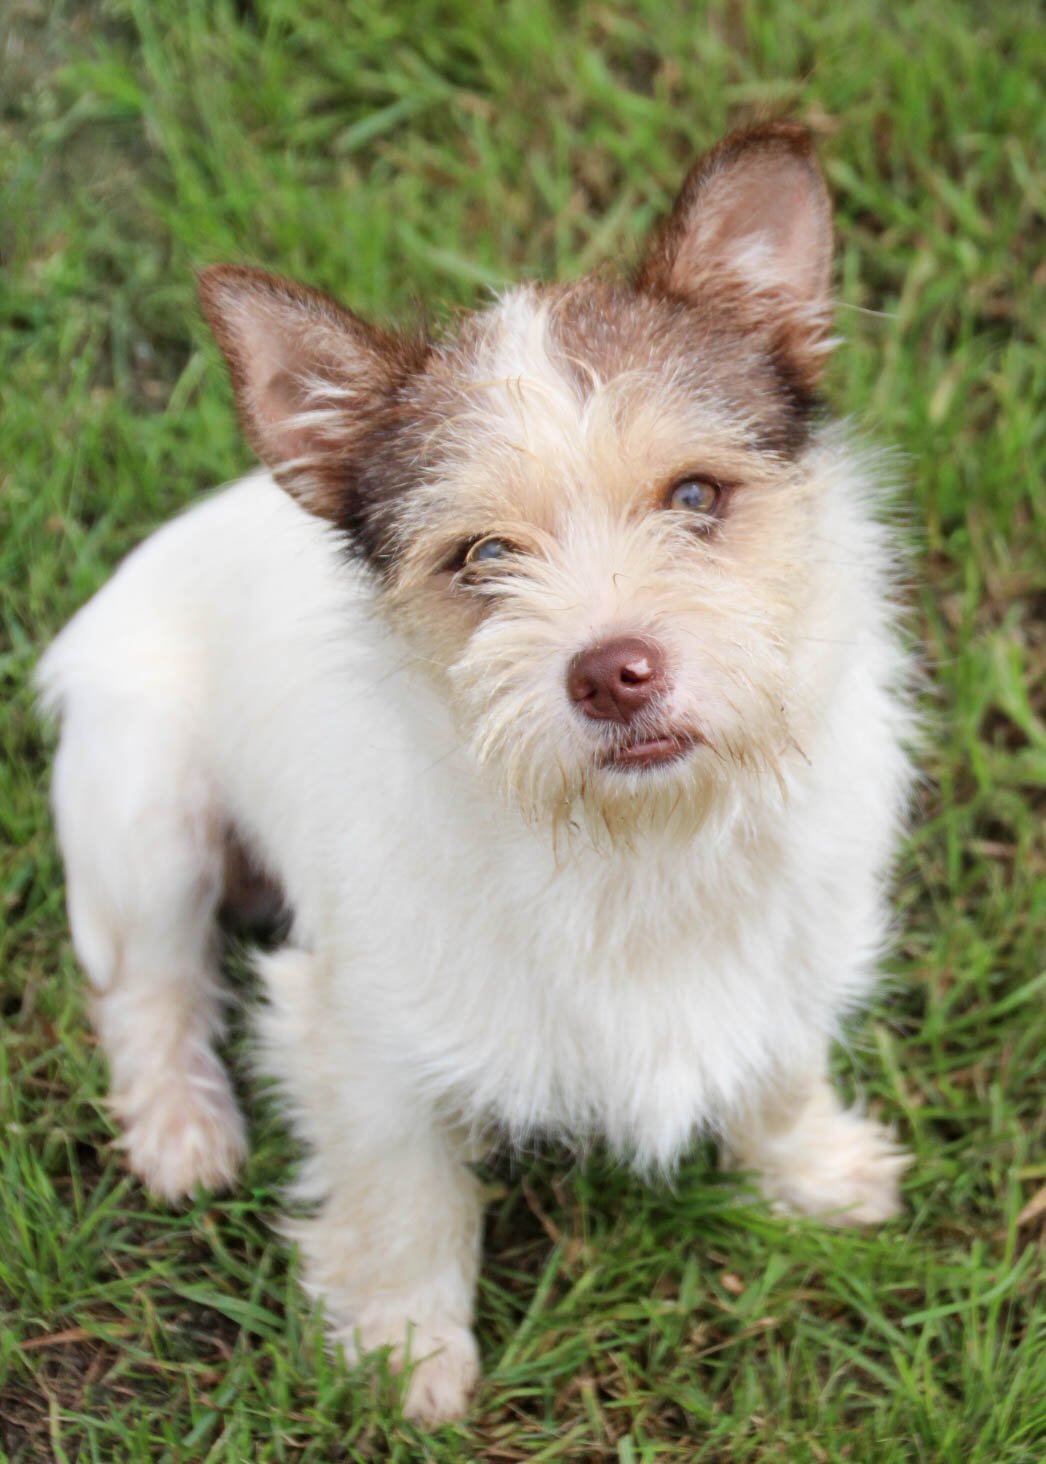 adoptable Dog in Lakehills, TX named Piglet